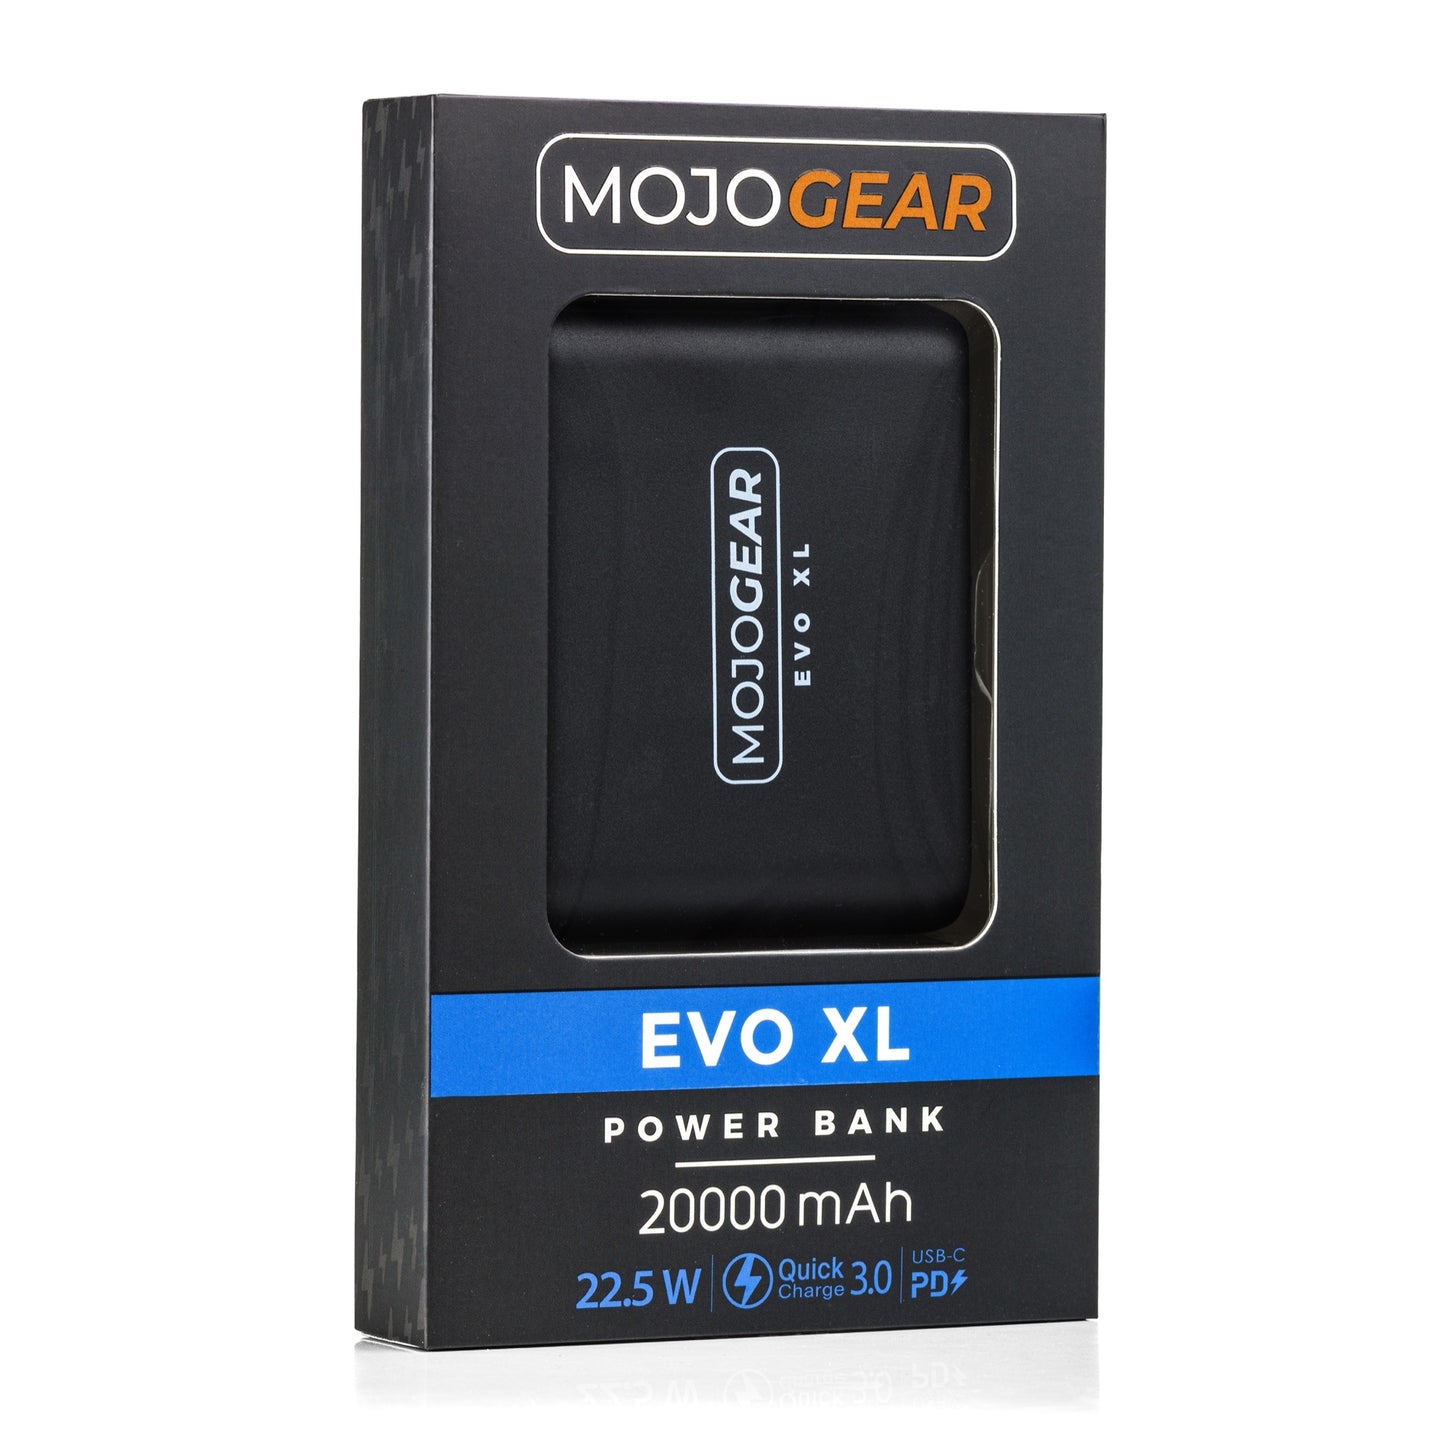 MOJOGEAR EVO XL 20.000 mAh powerbank 22.5W